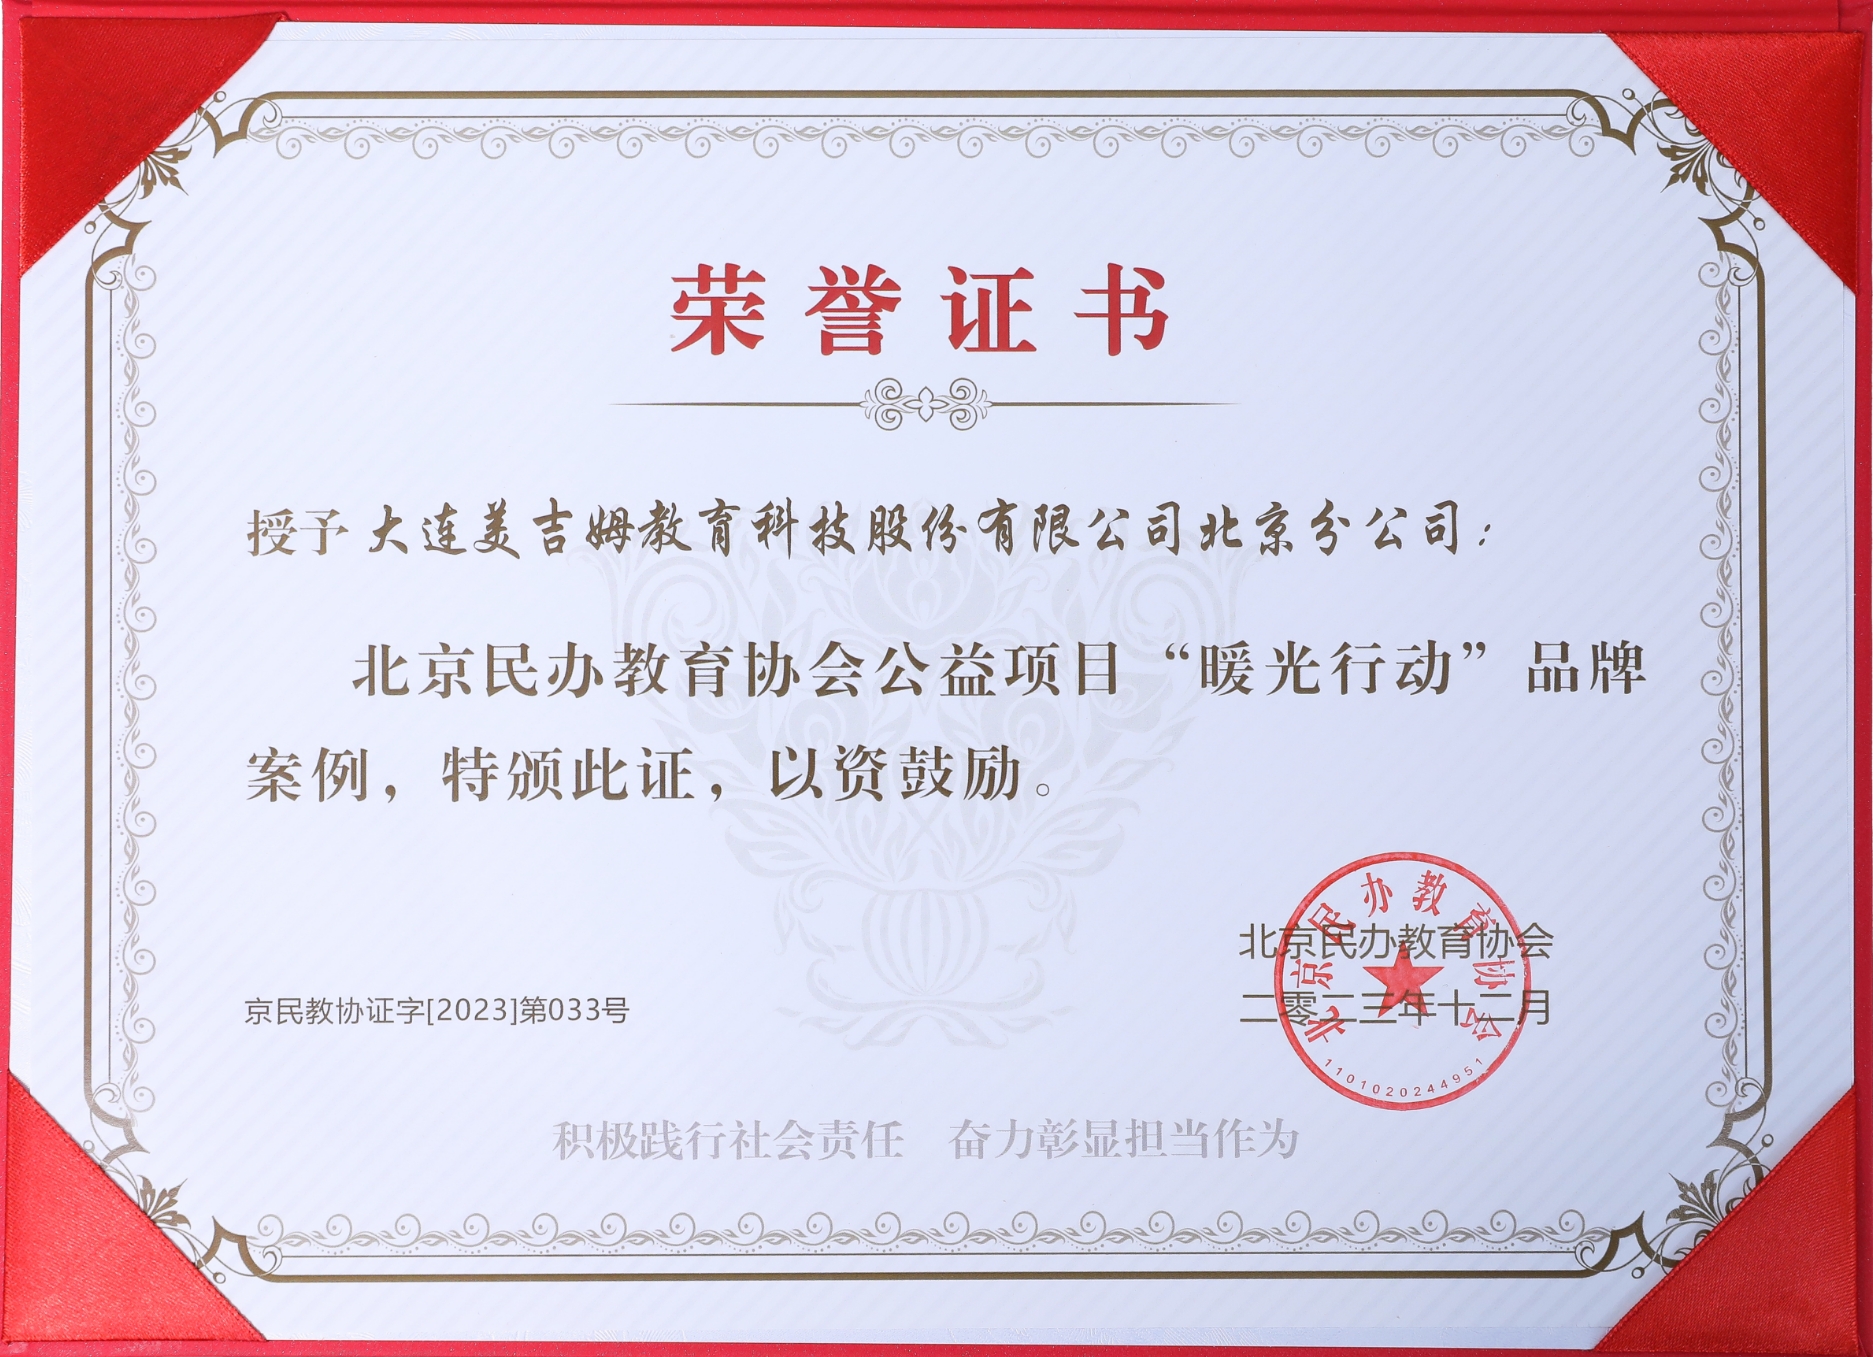 2023年北京民办教育协会公益项目“暖光行动”品牌